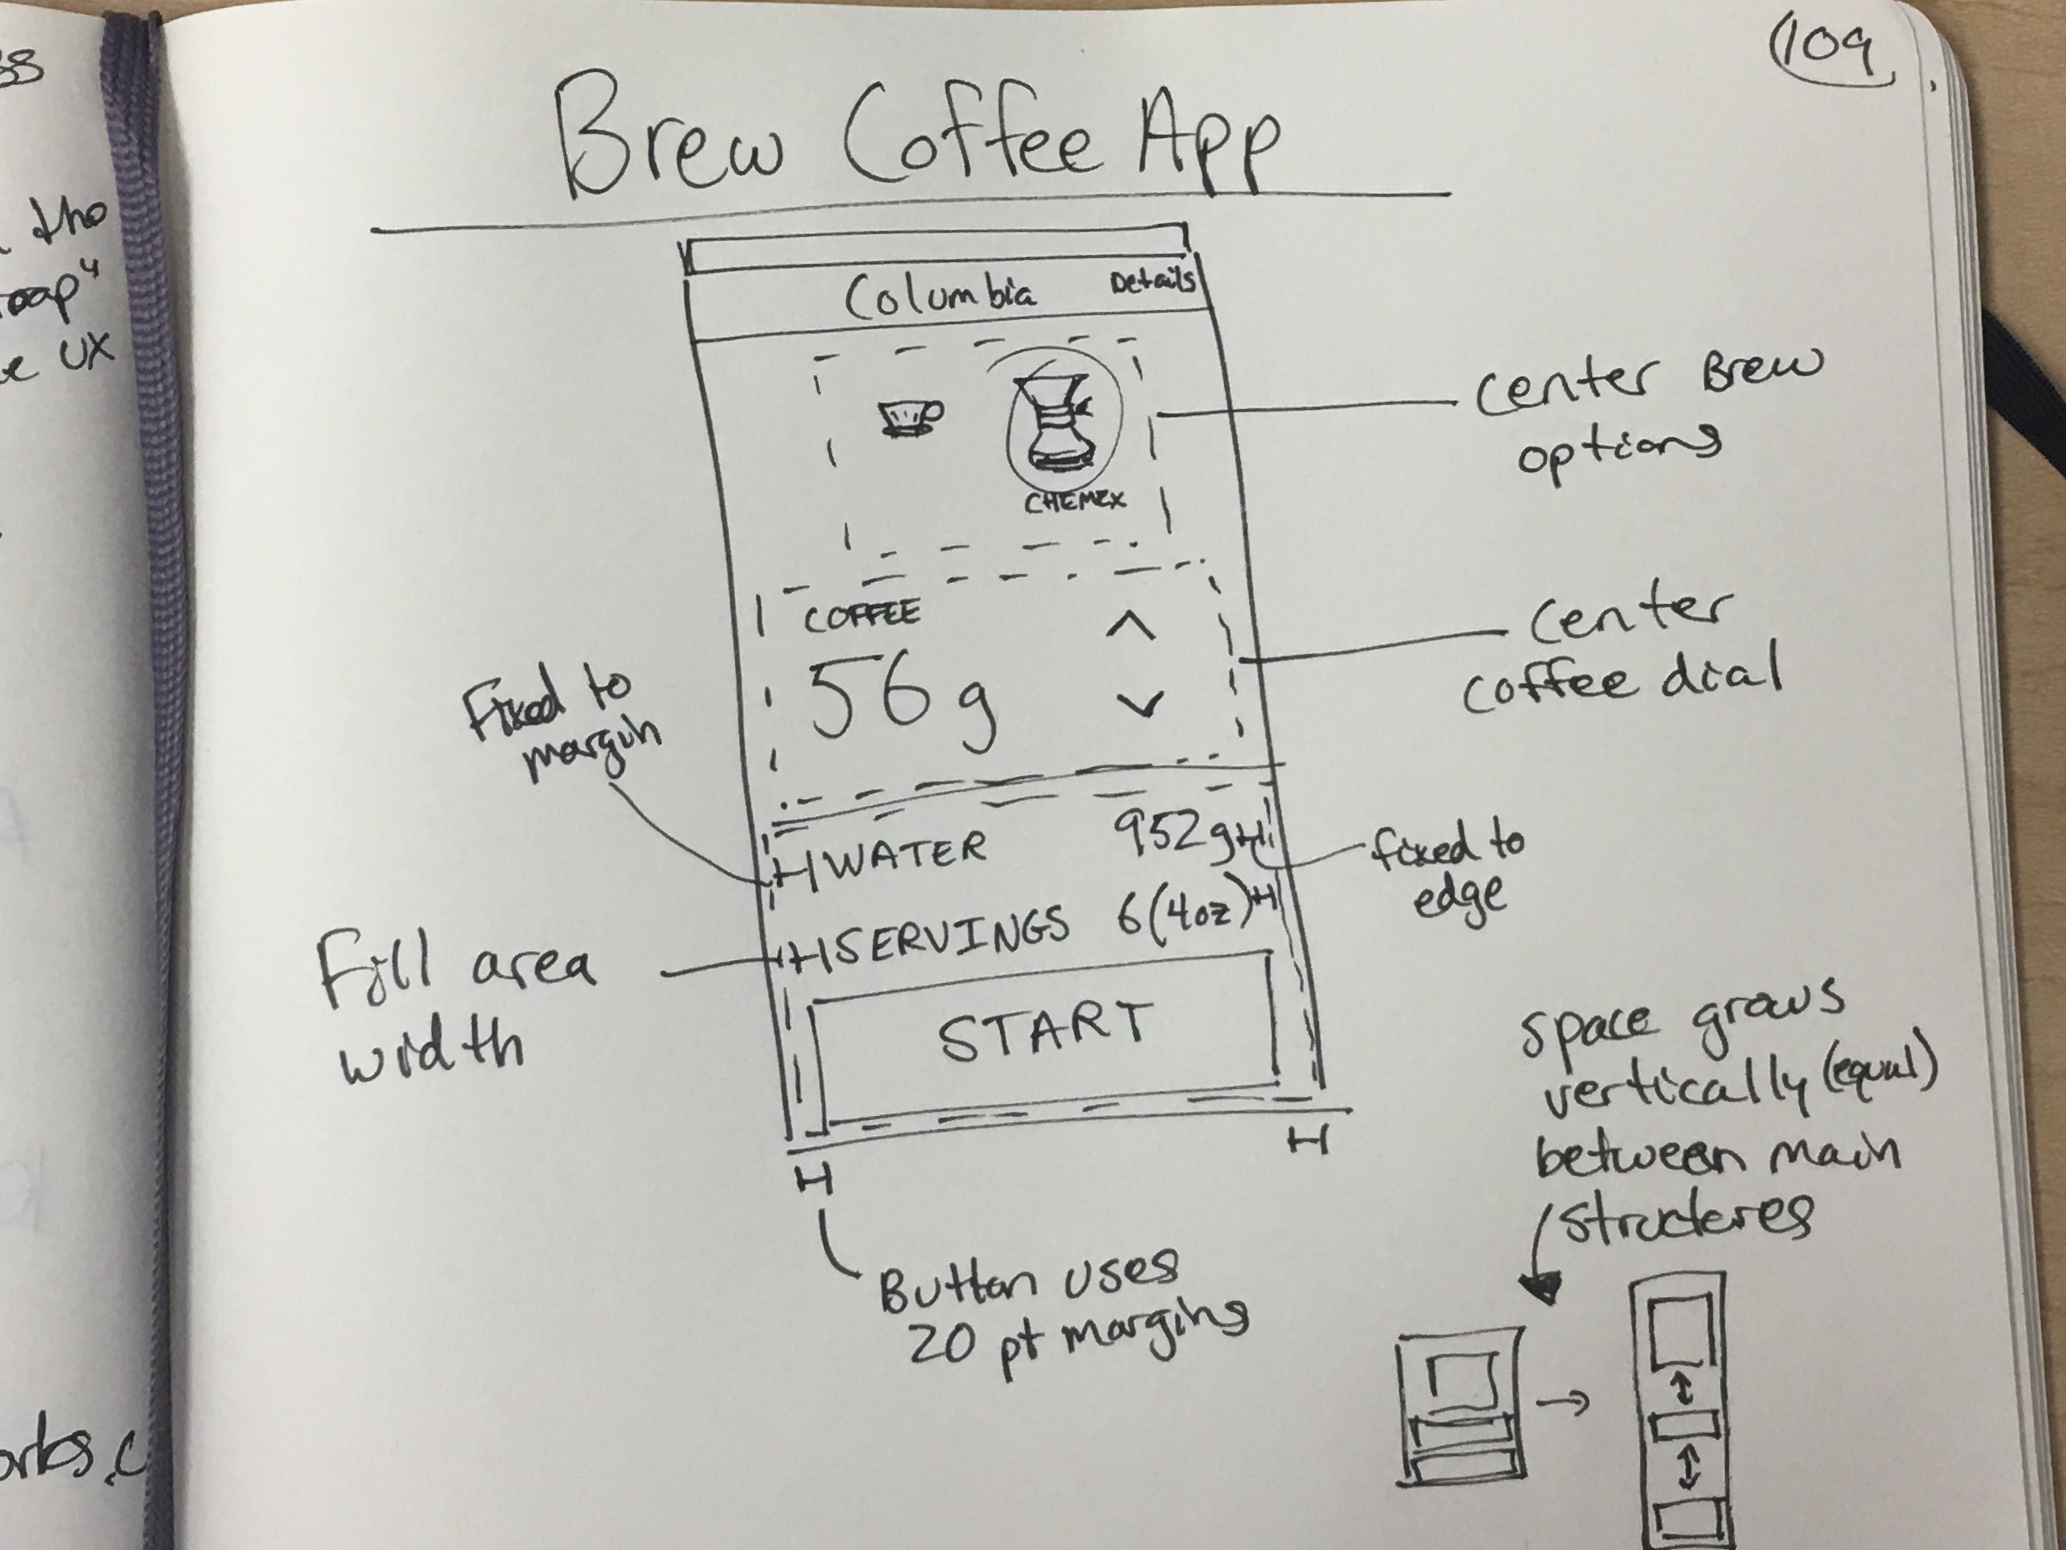 Brew Coffee app